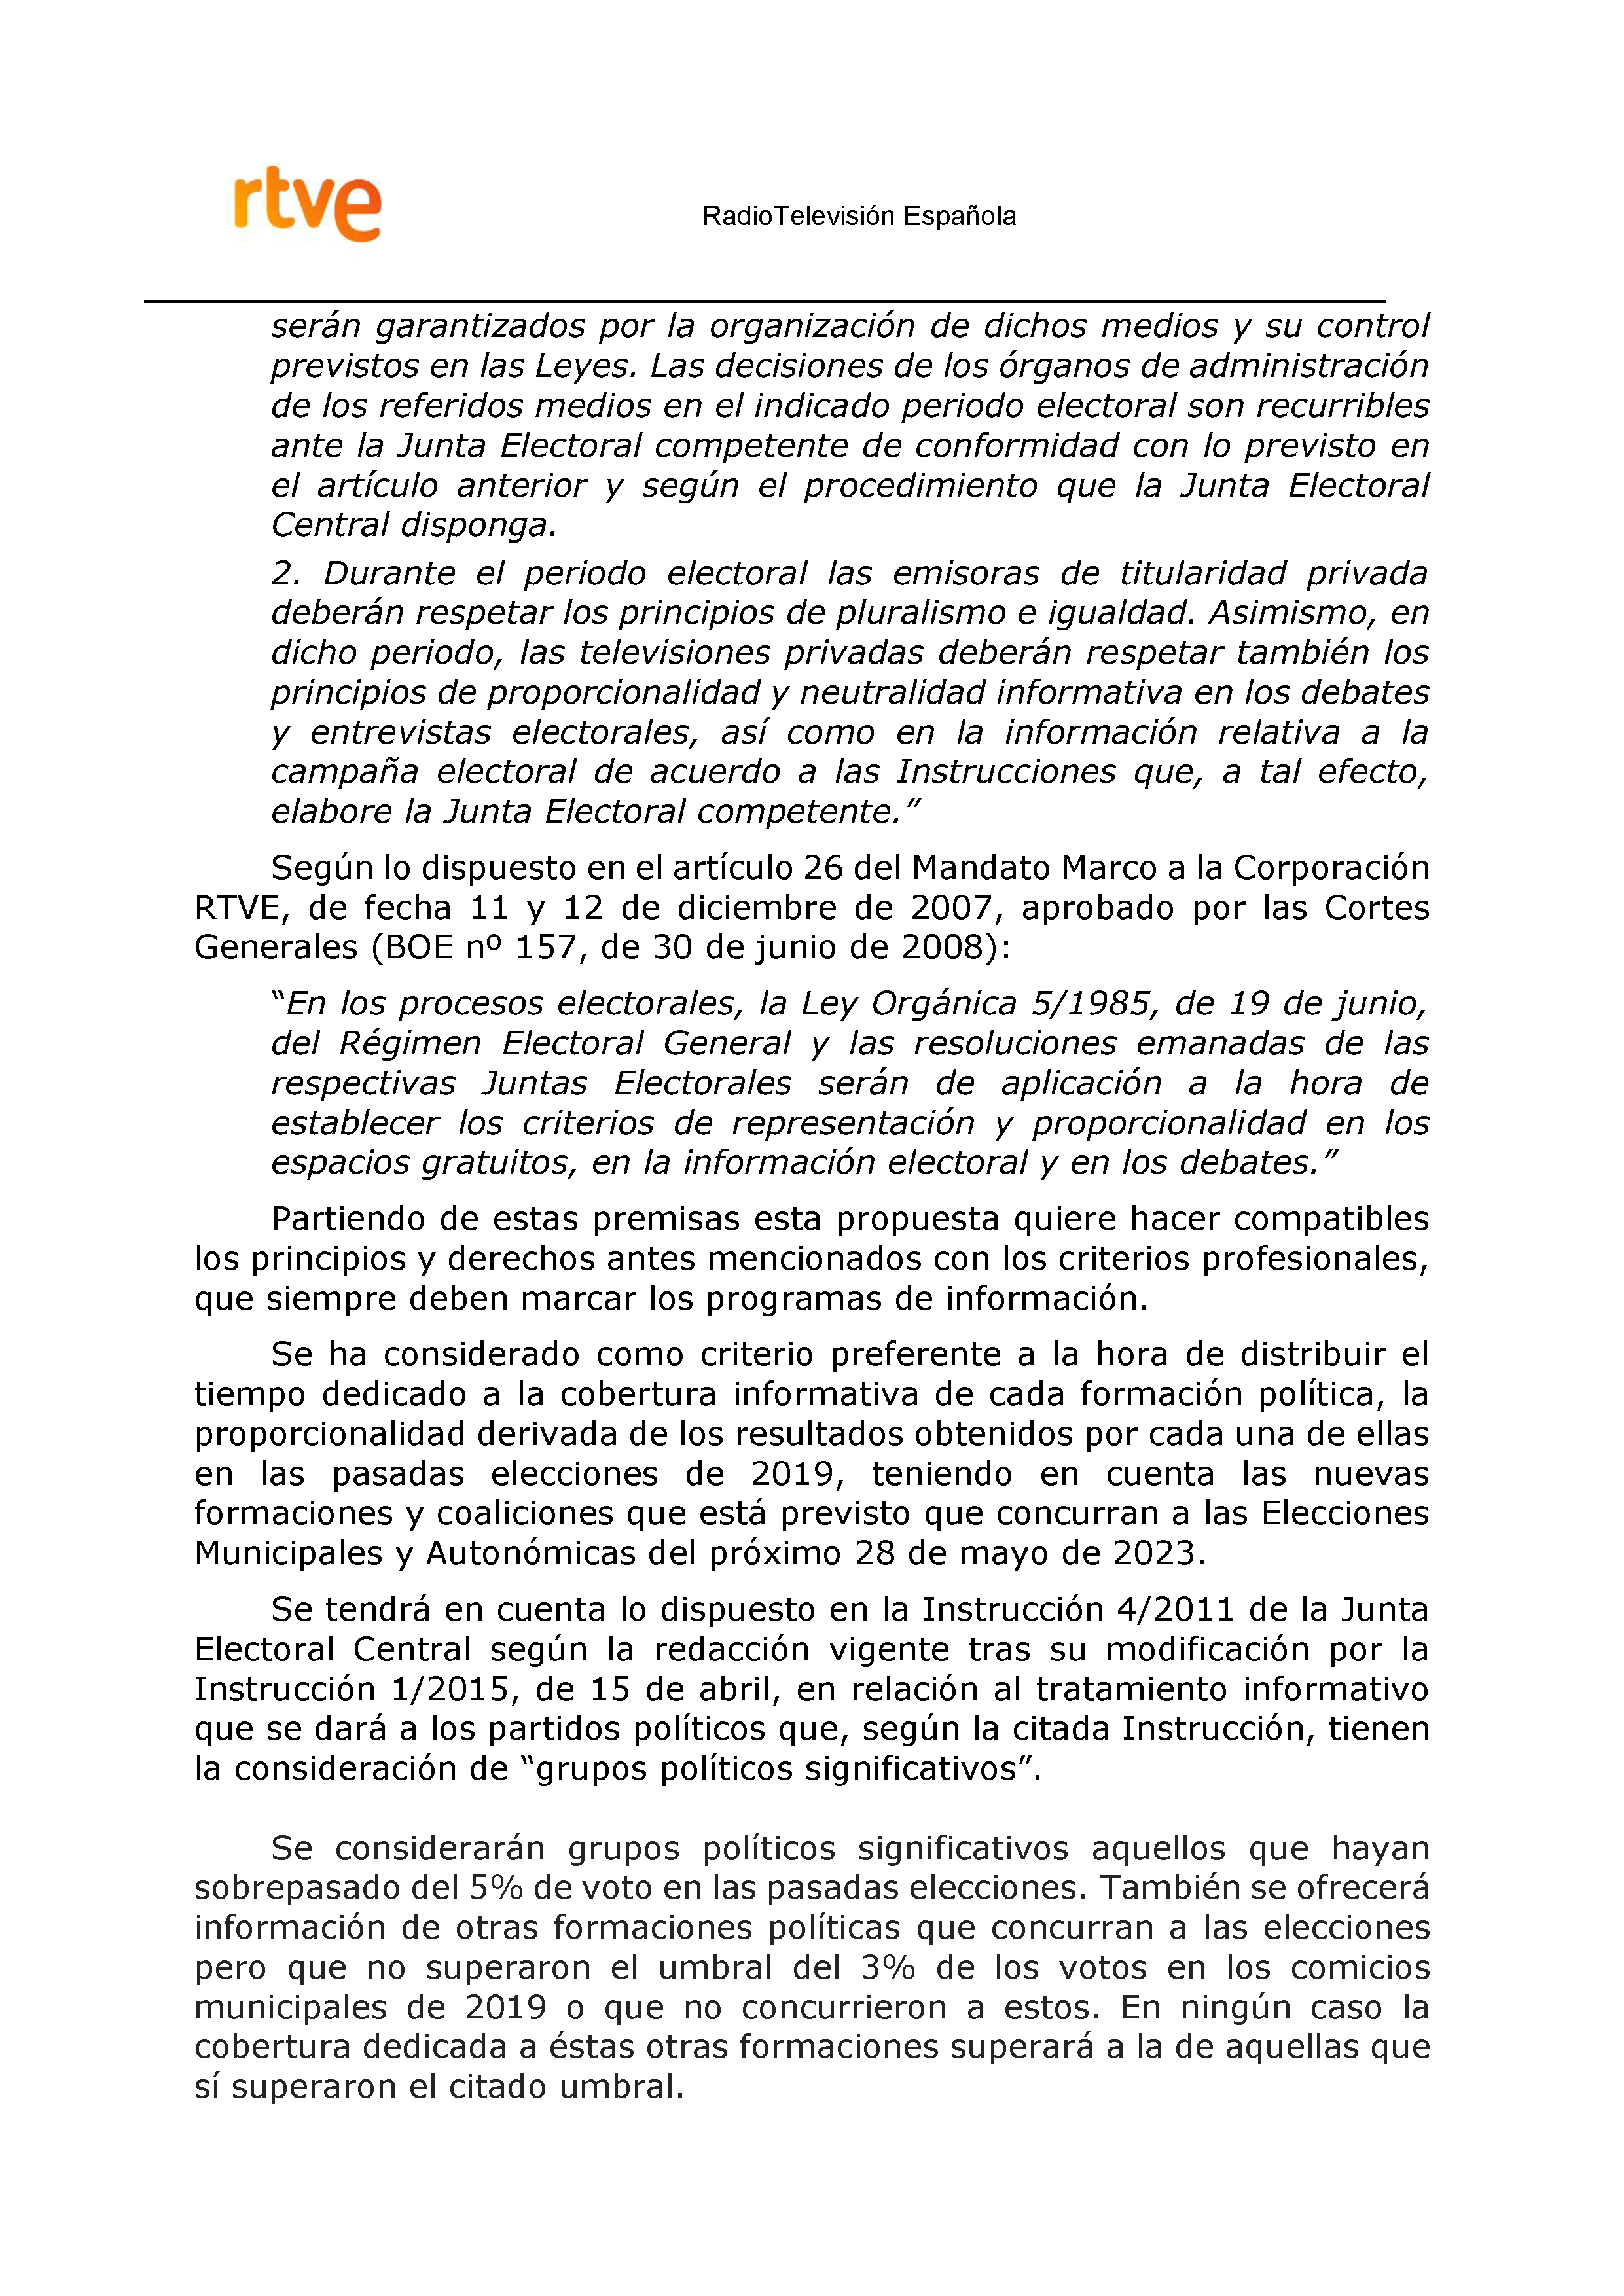 PLAN DE COBERTURA INFORMATIVA RTVE en Extremadura ELECCIONES MUNICIPALES Y AUTONÃ“MICAS Pag 3